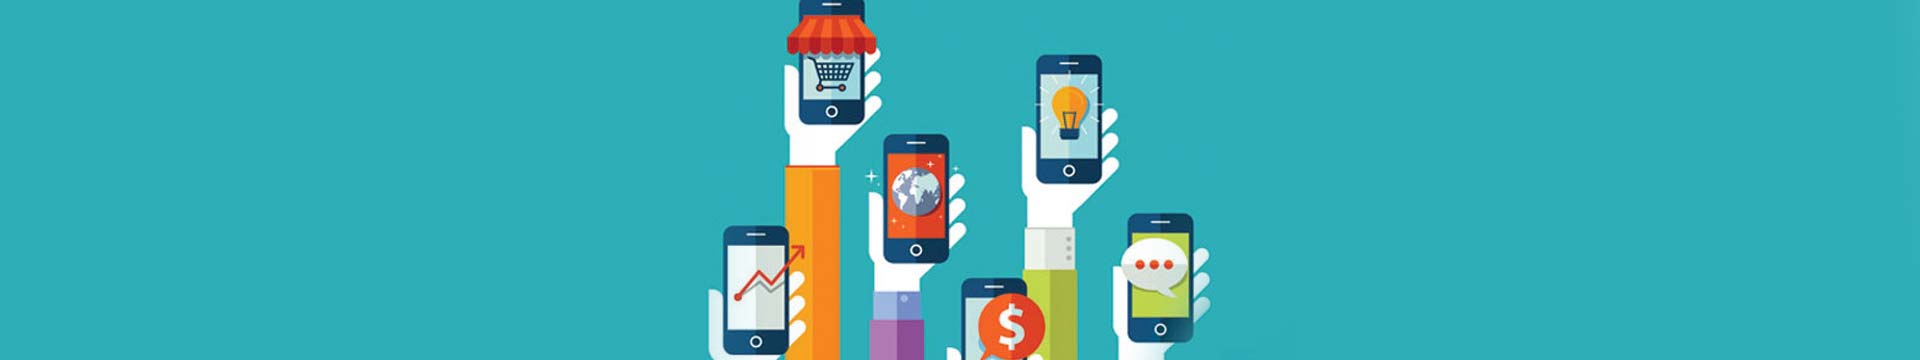 ยุค Mobile First คืออะไร ธุรกิจ SME ต้องปรับตัวแค่ไหน?